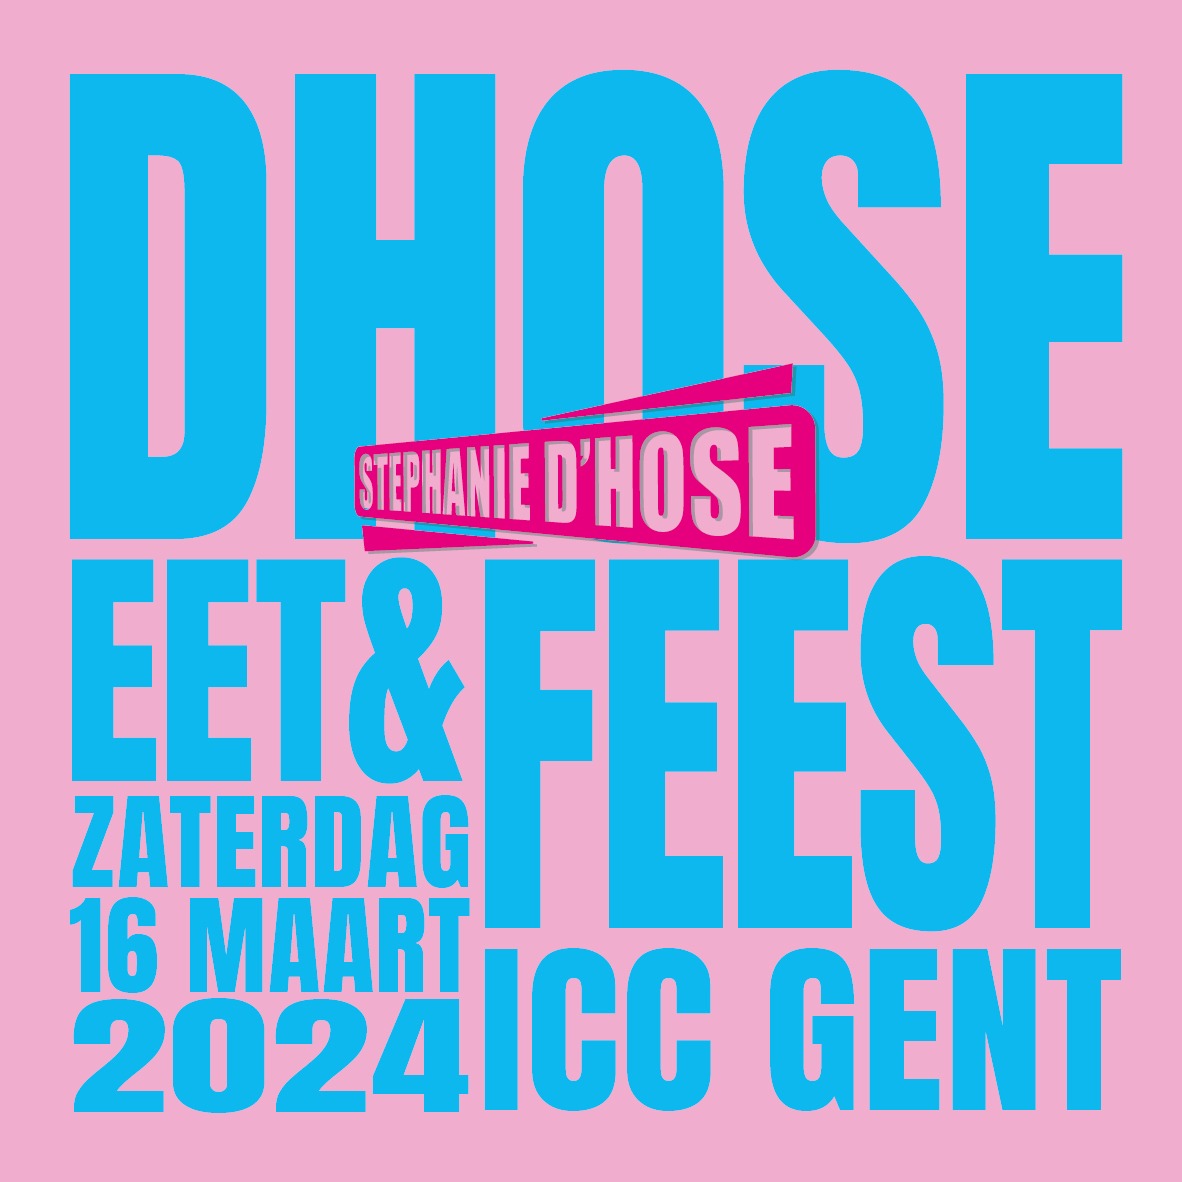 DHose eet en feest - zaterdag 16 maart 2024 in het ICC Gent